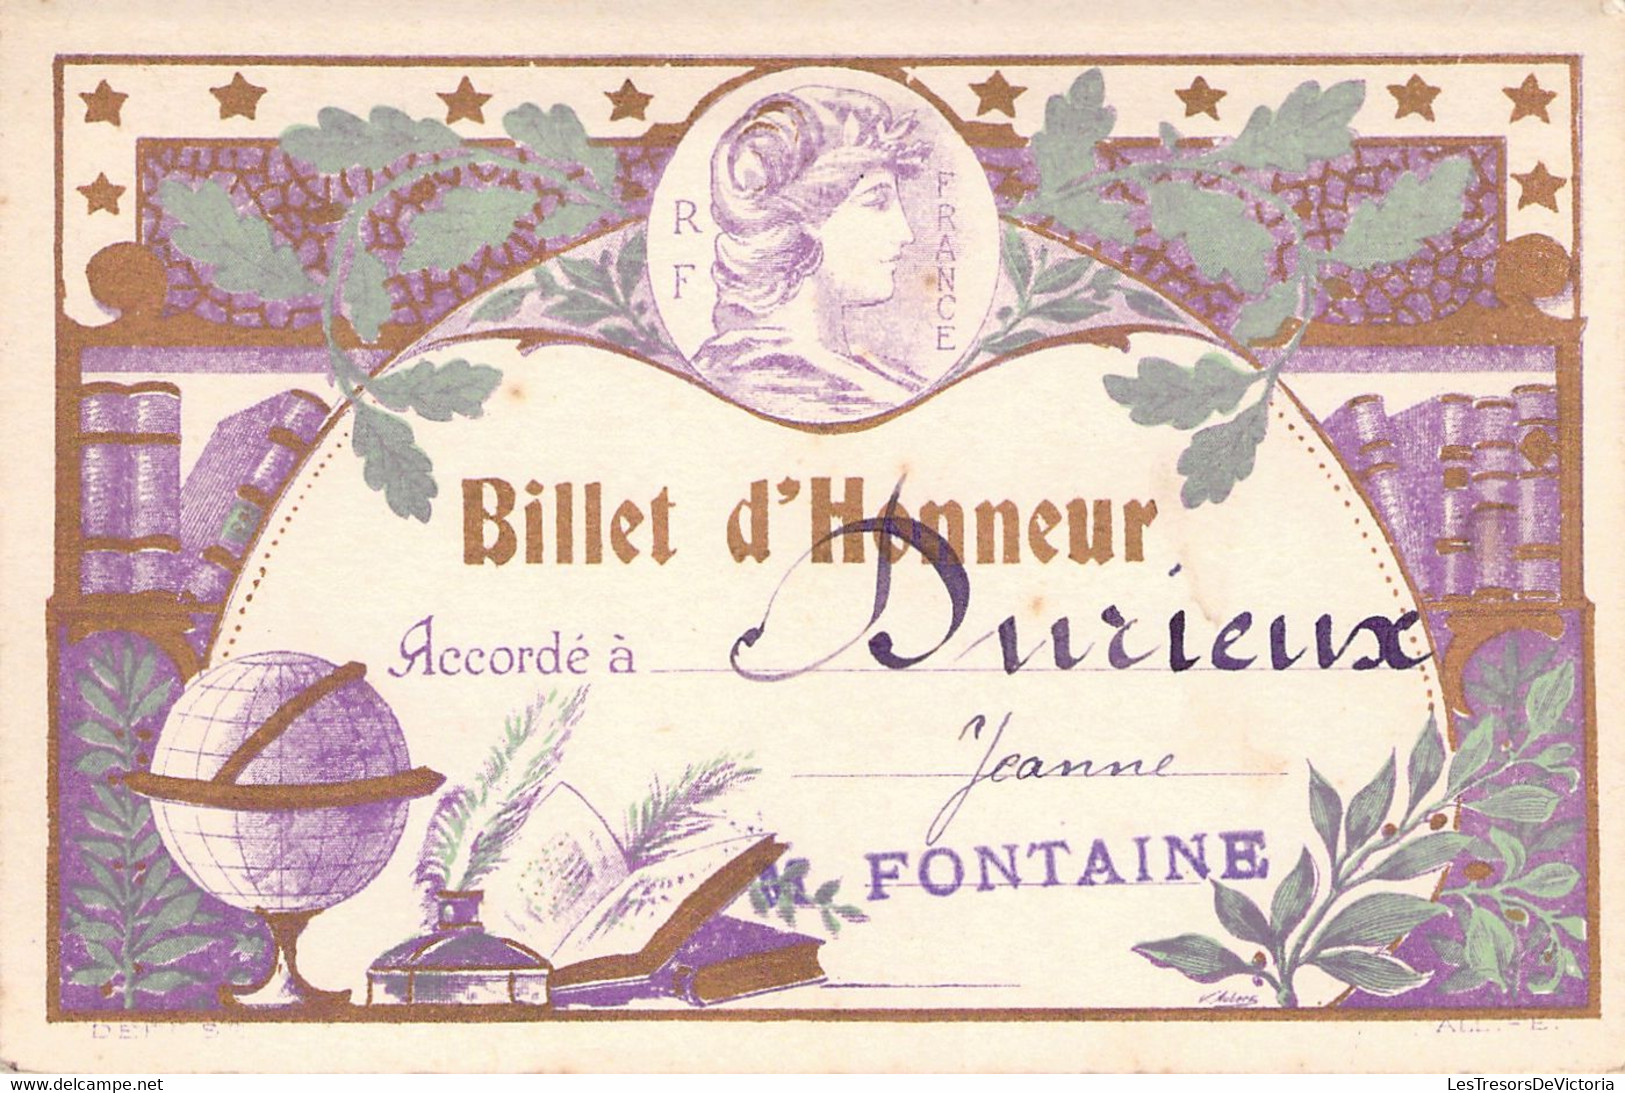 Lot De 4 Billets D'Honneur Accordé à Durieux Jeanne En 1924 - M Fontaine - France - BAISSE DE PRIX -50% - Diplômes & Bulletins Scolaires